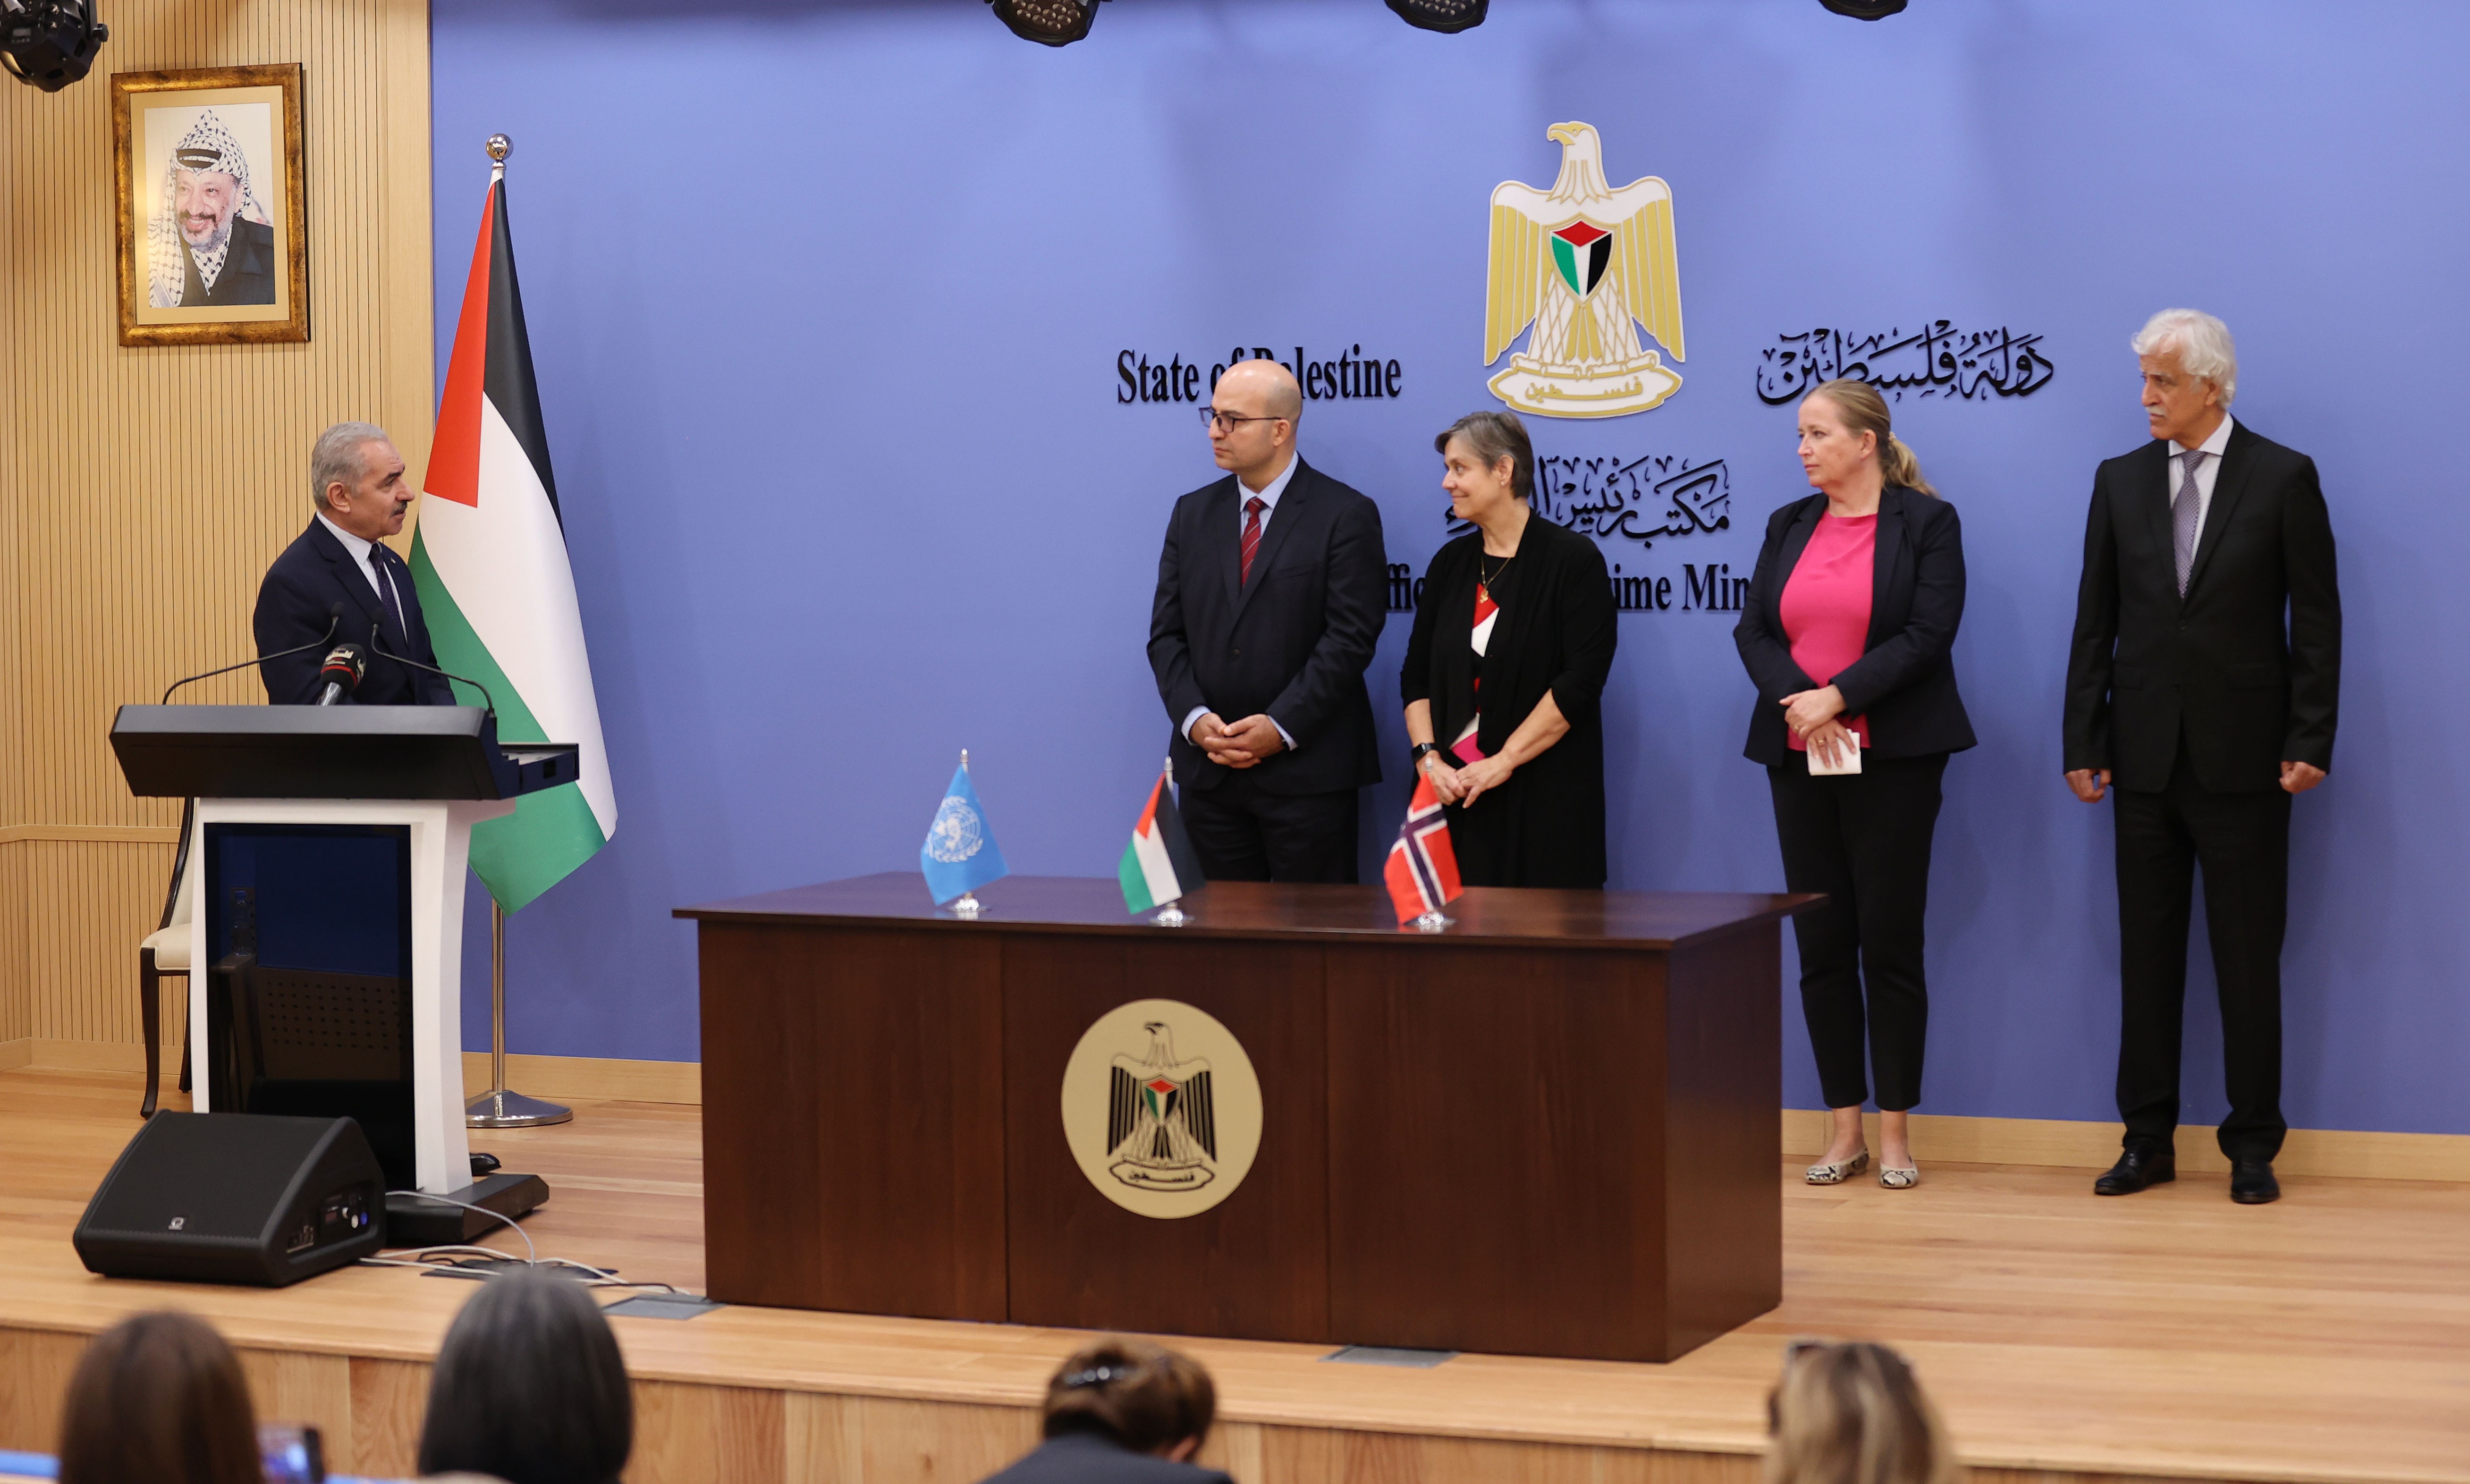 النرويج وبرنامج الأمم المتحدة الإنمائي يوقعان اتفاقية لدعم التعليم في القدس بقيمة 6.3 مليون دولار 1.jpg